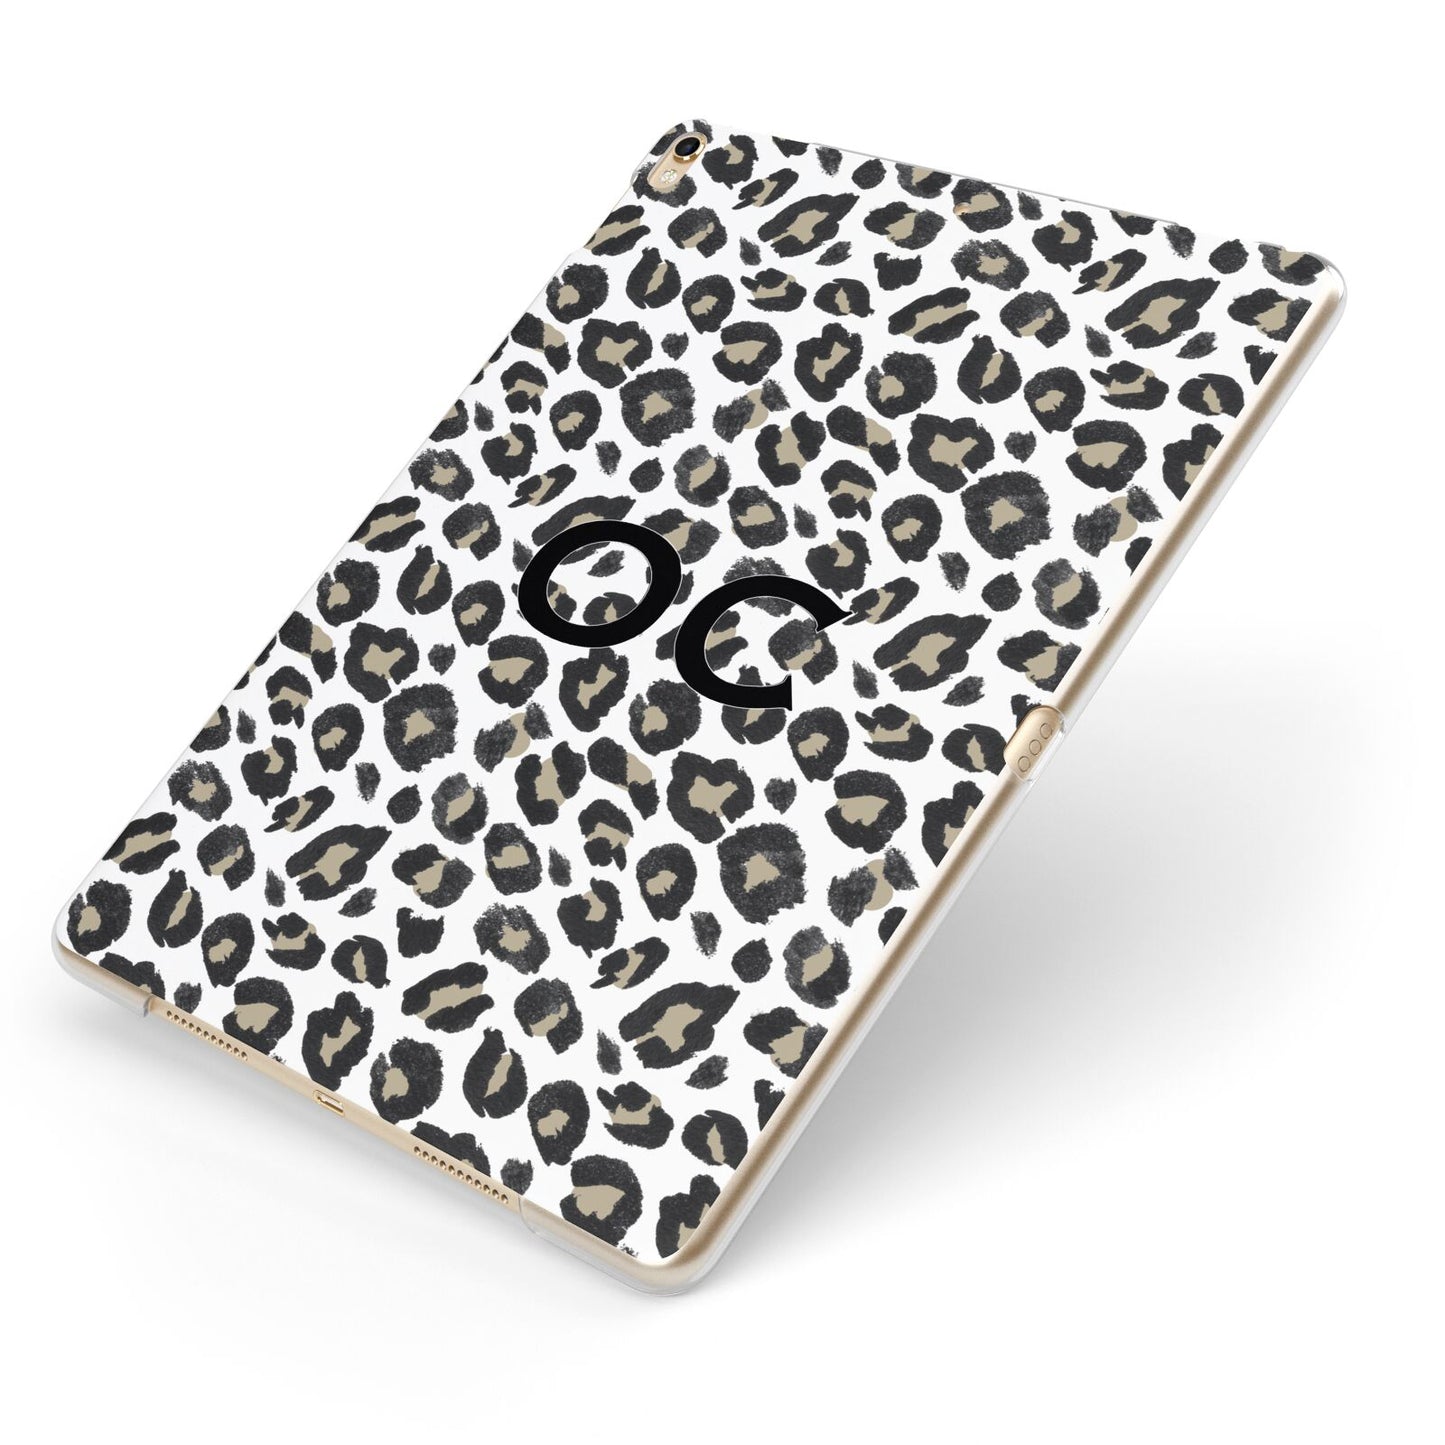 Tan Leopard Print Pattern Apple iPad Case on Gold iPad Side View